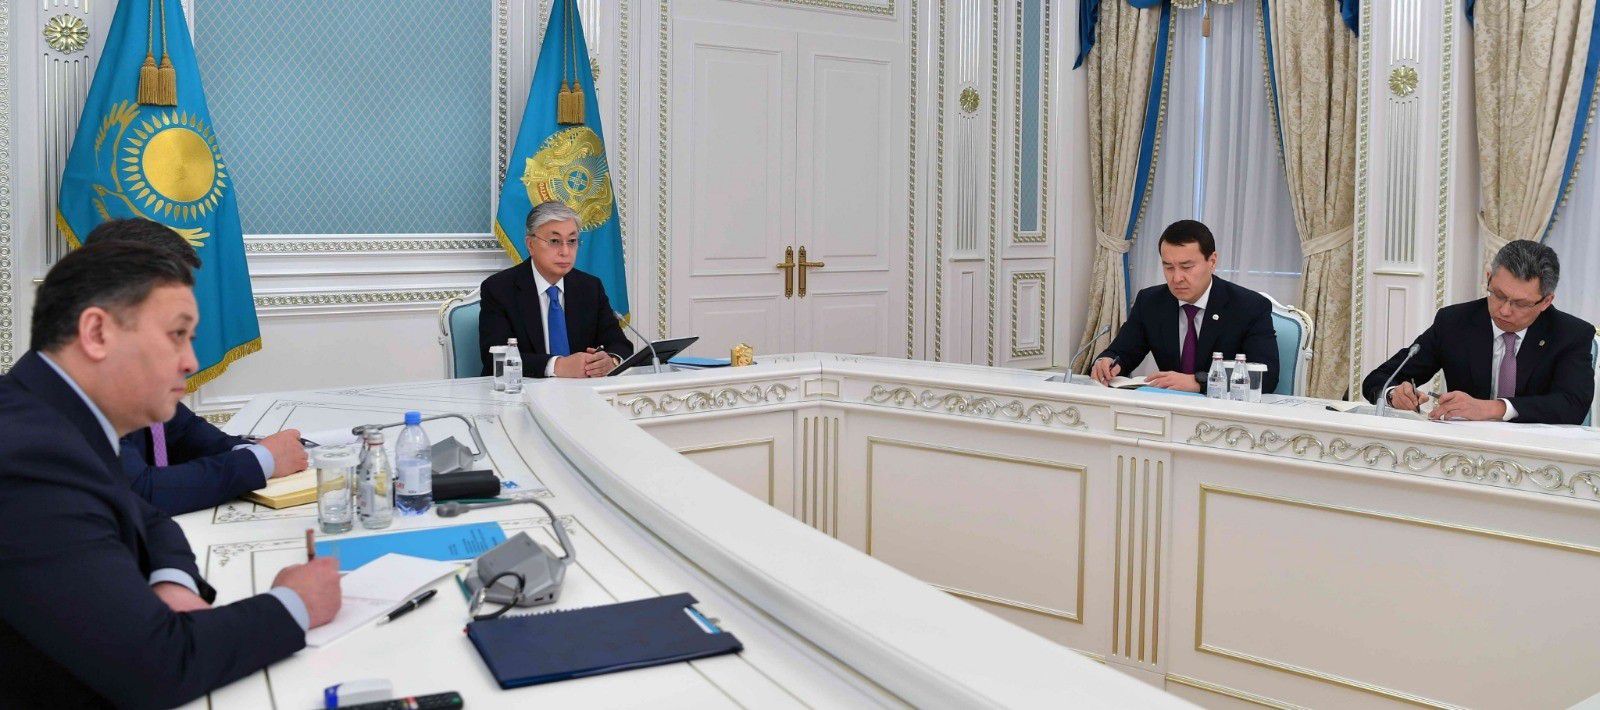 14-04-2020 El presidente de Kazajistán, Kasim Jomart Tokayev, en una reunión gubernamental POLITICA ASIA INTERNACIONAL KAZAJSTÁN PRESIDENCIA DE KAZAJISTÁN 